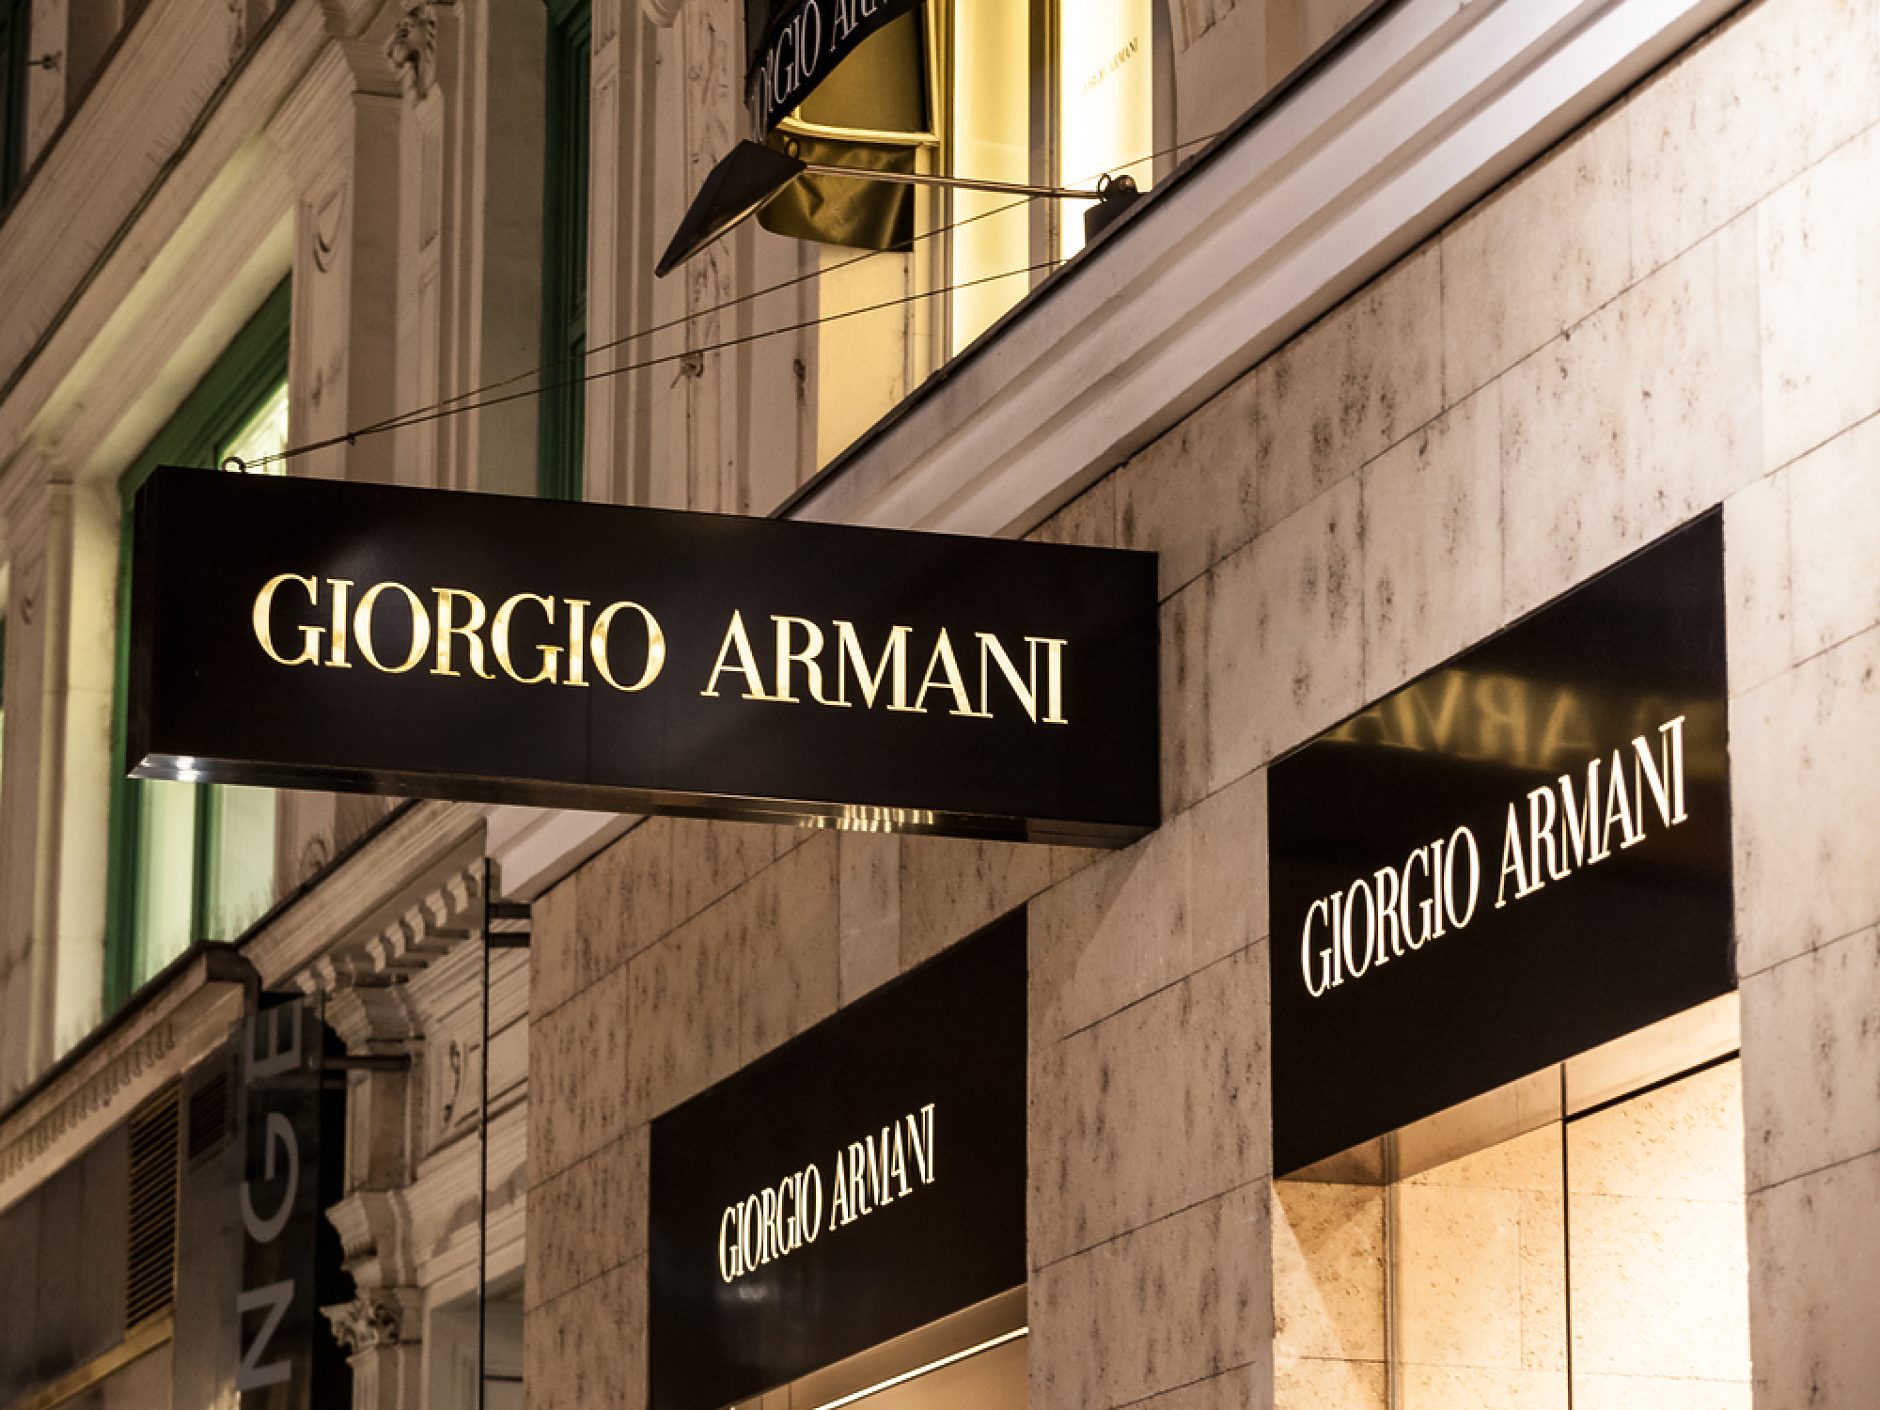 Съд нареди проверка на модна къща Armani по подозрение за трудова експлоатация 